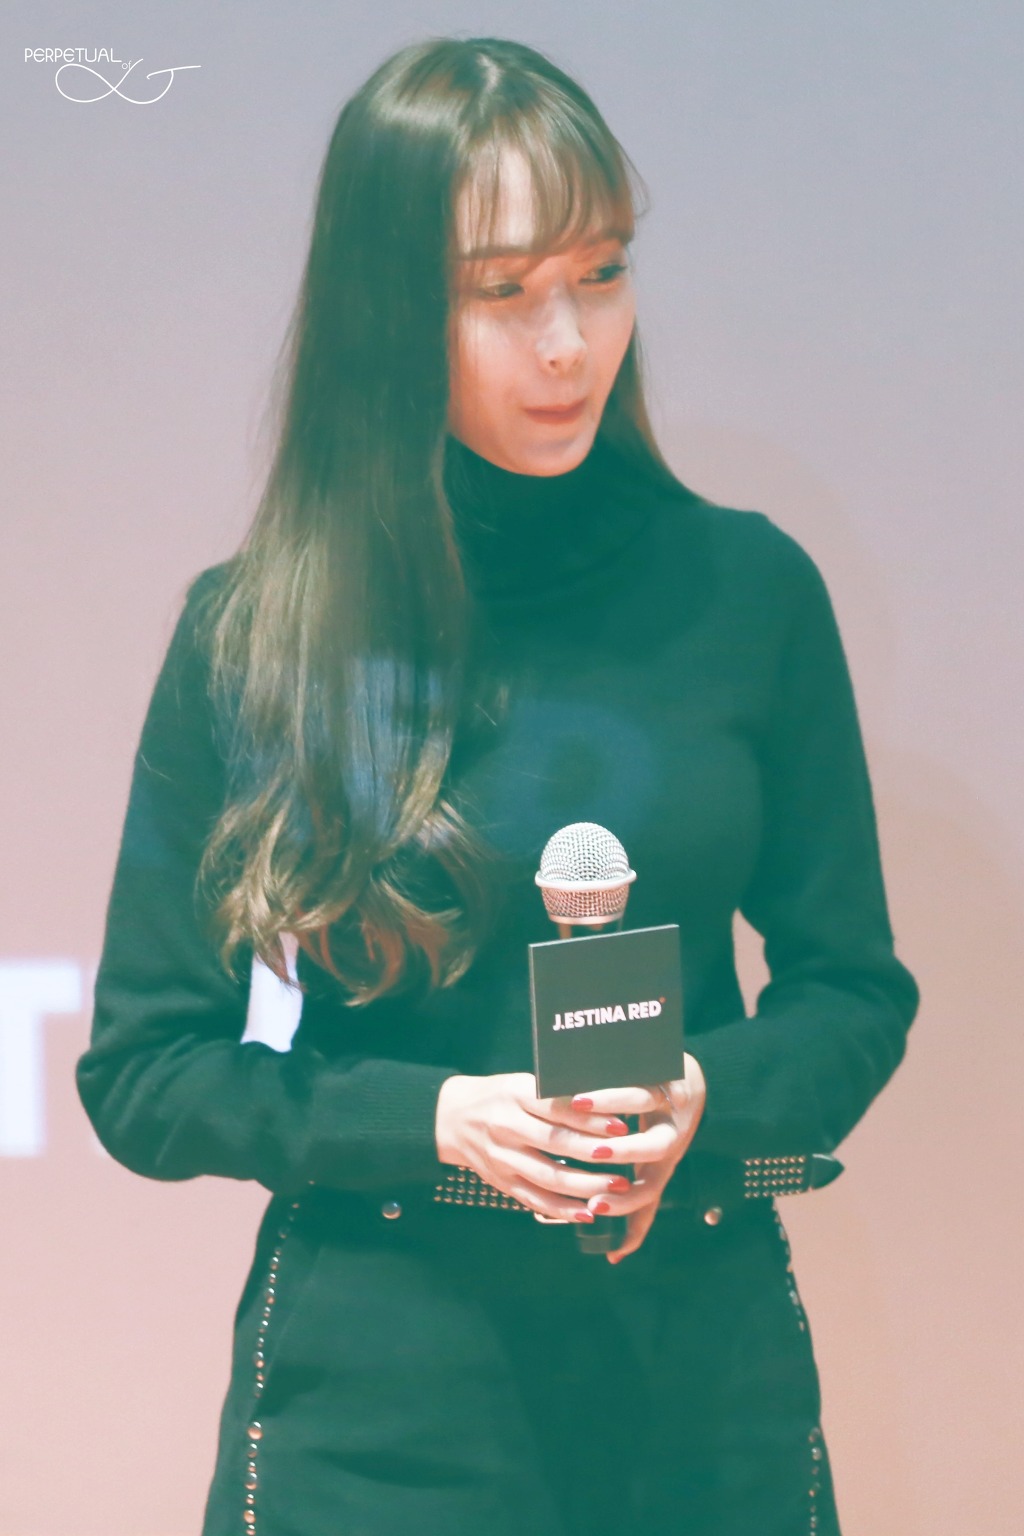 [PIC][07-11-2015]Jessica tham dự buổi Fansign cho dòng mỹ phẩm "J.ESTINA RED" tại "Myeongdong Lotte Cinema" vào chiều nay 2533AD4F563EB19E16F80A